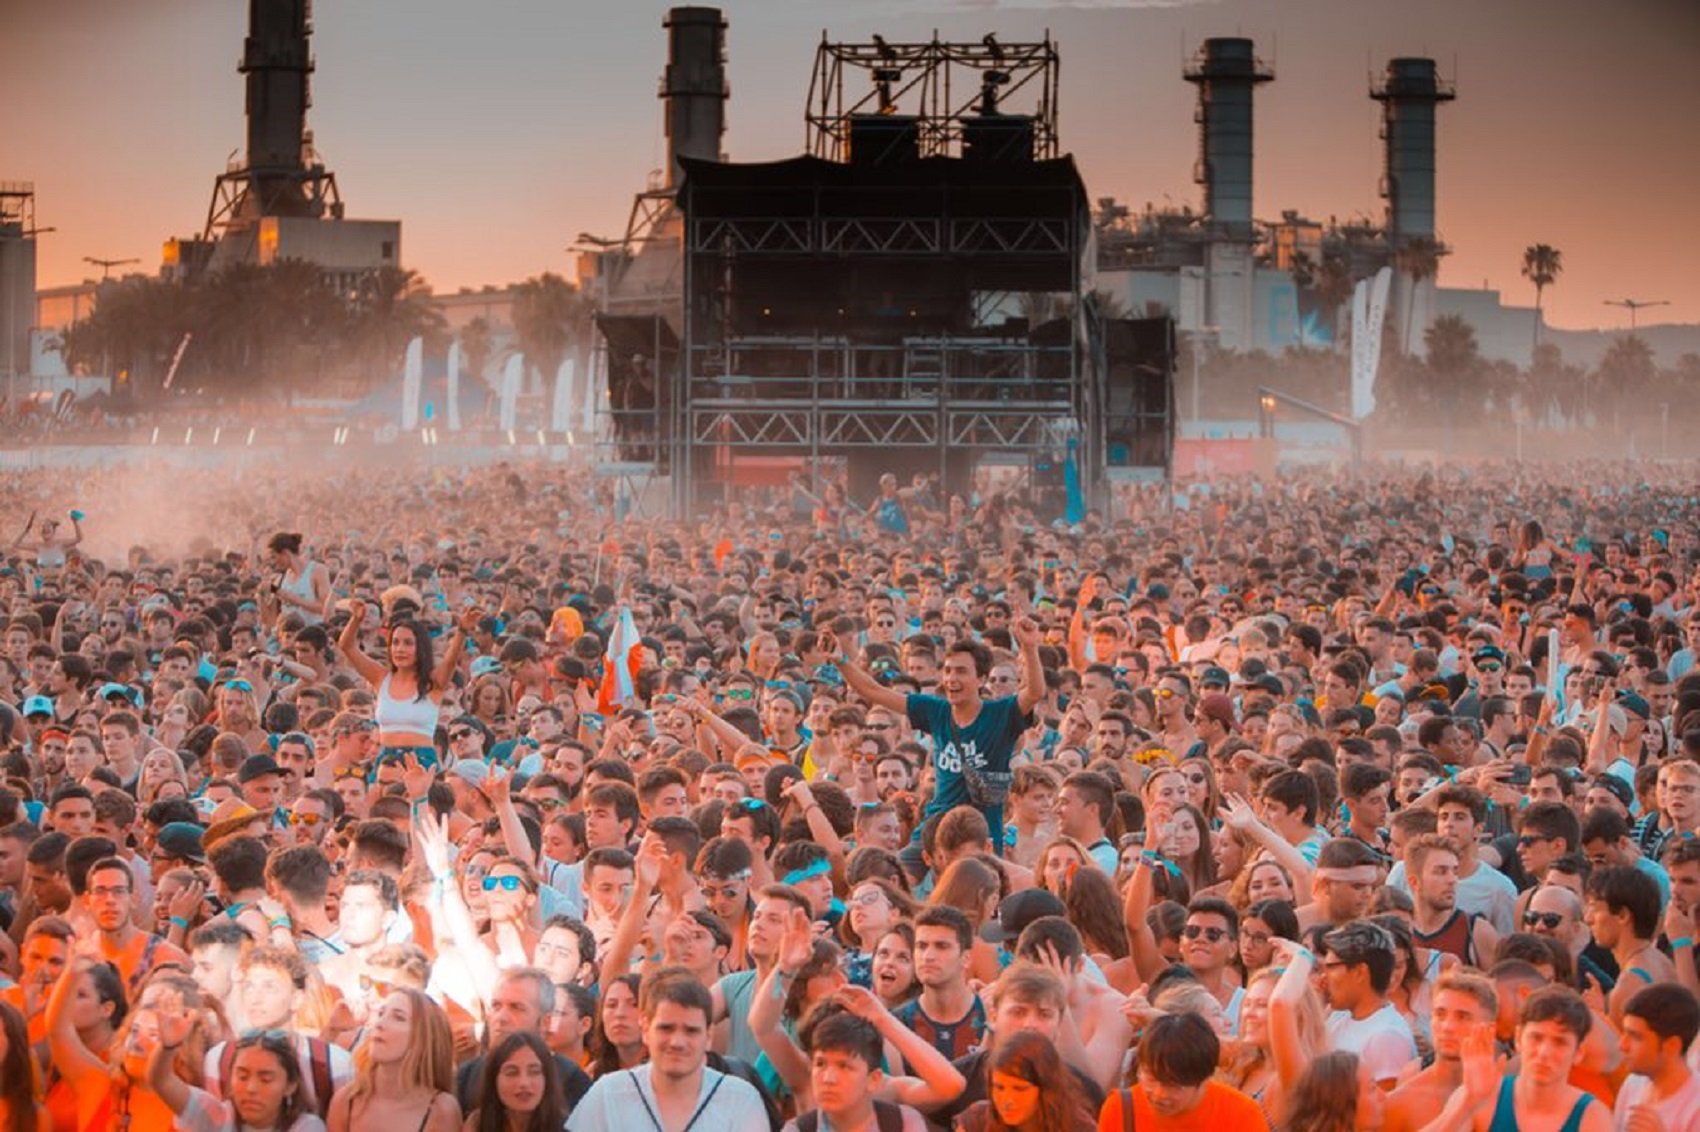 El Barcelona Beach Festival 2022 se queda sin licencia un día antes de empezar